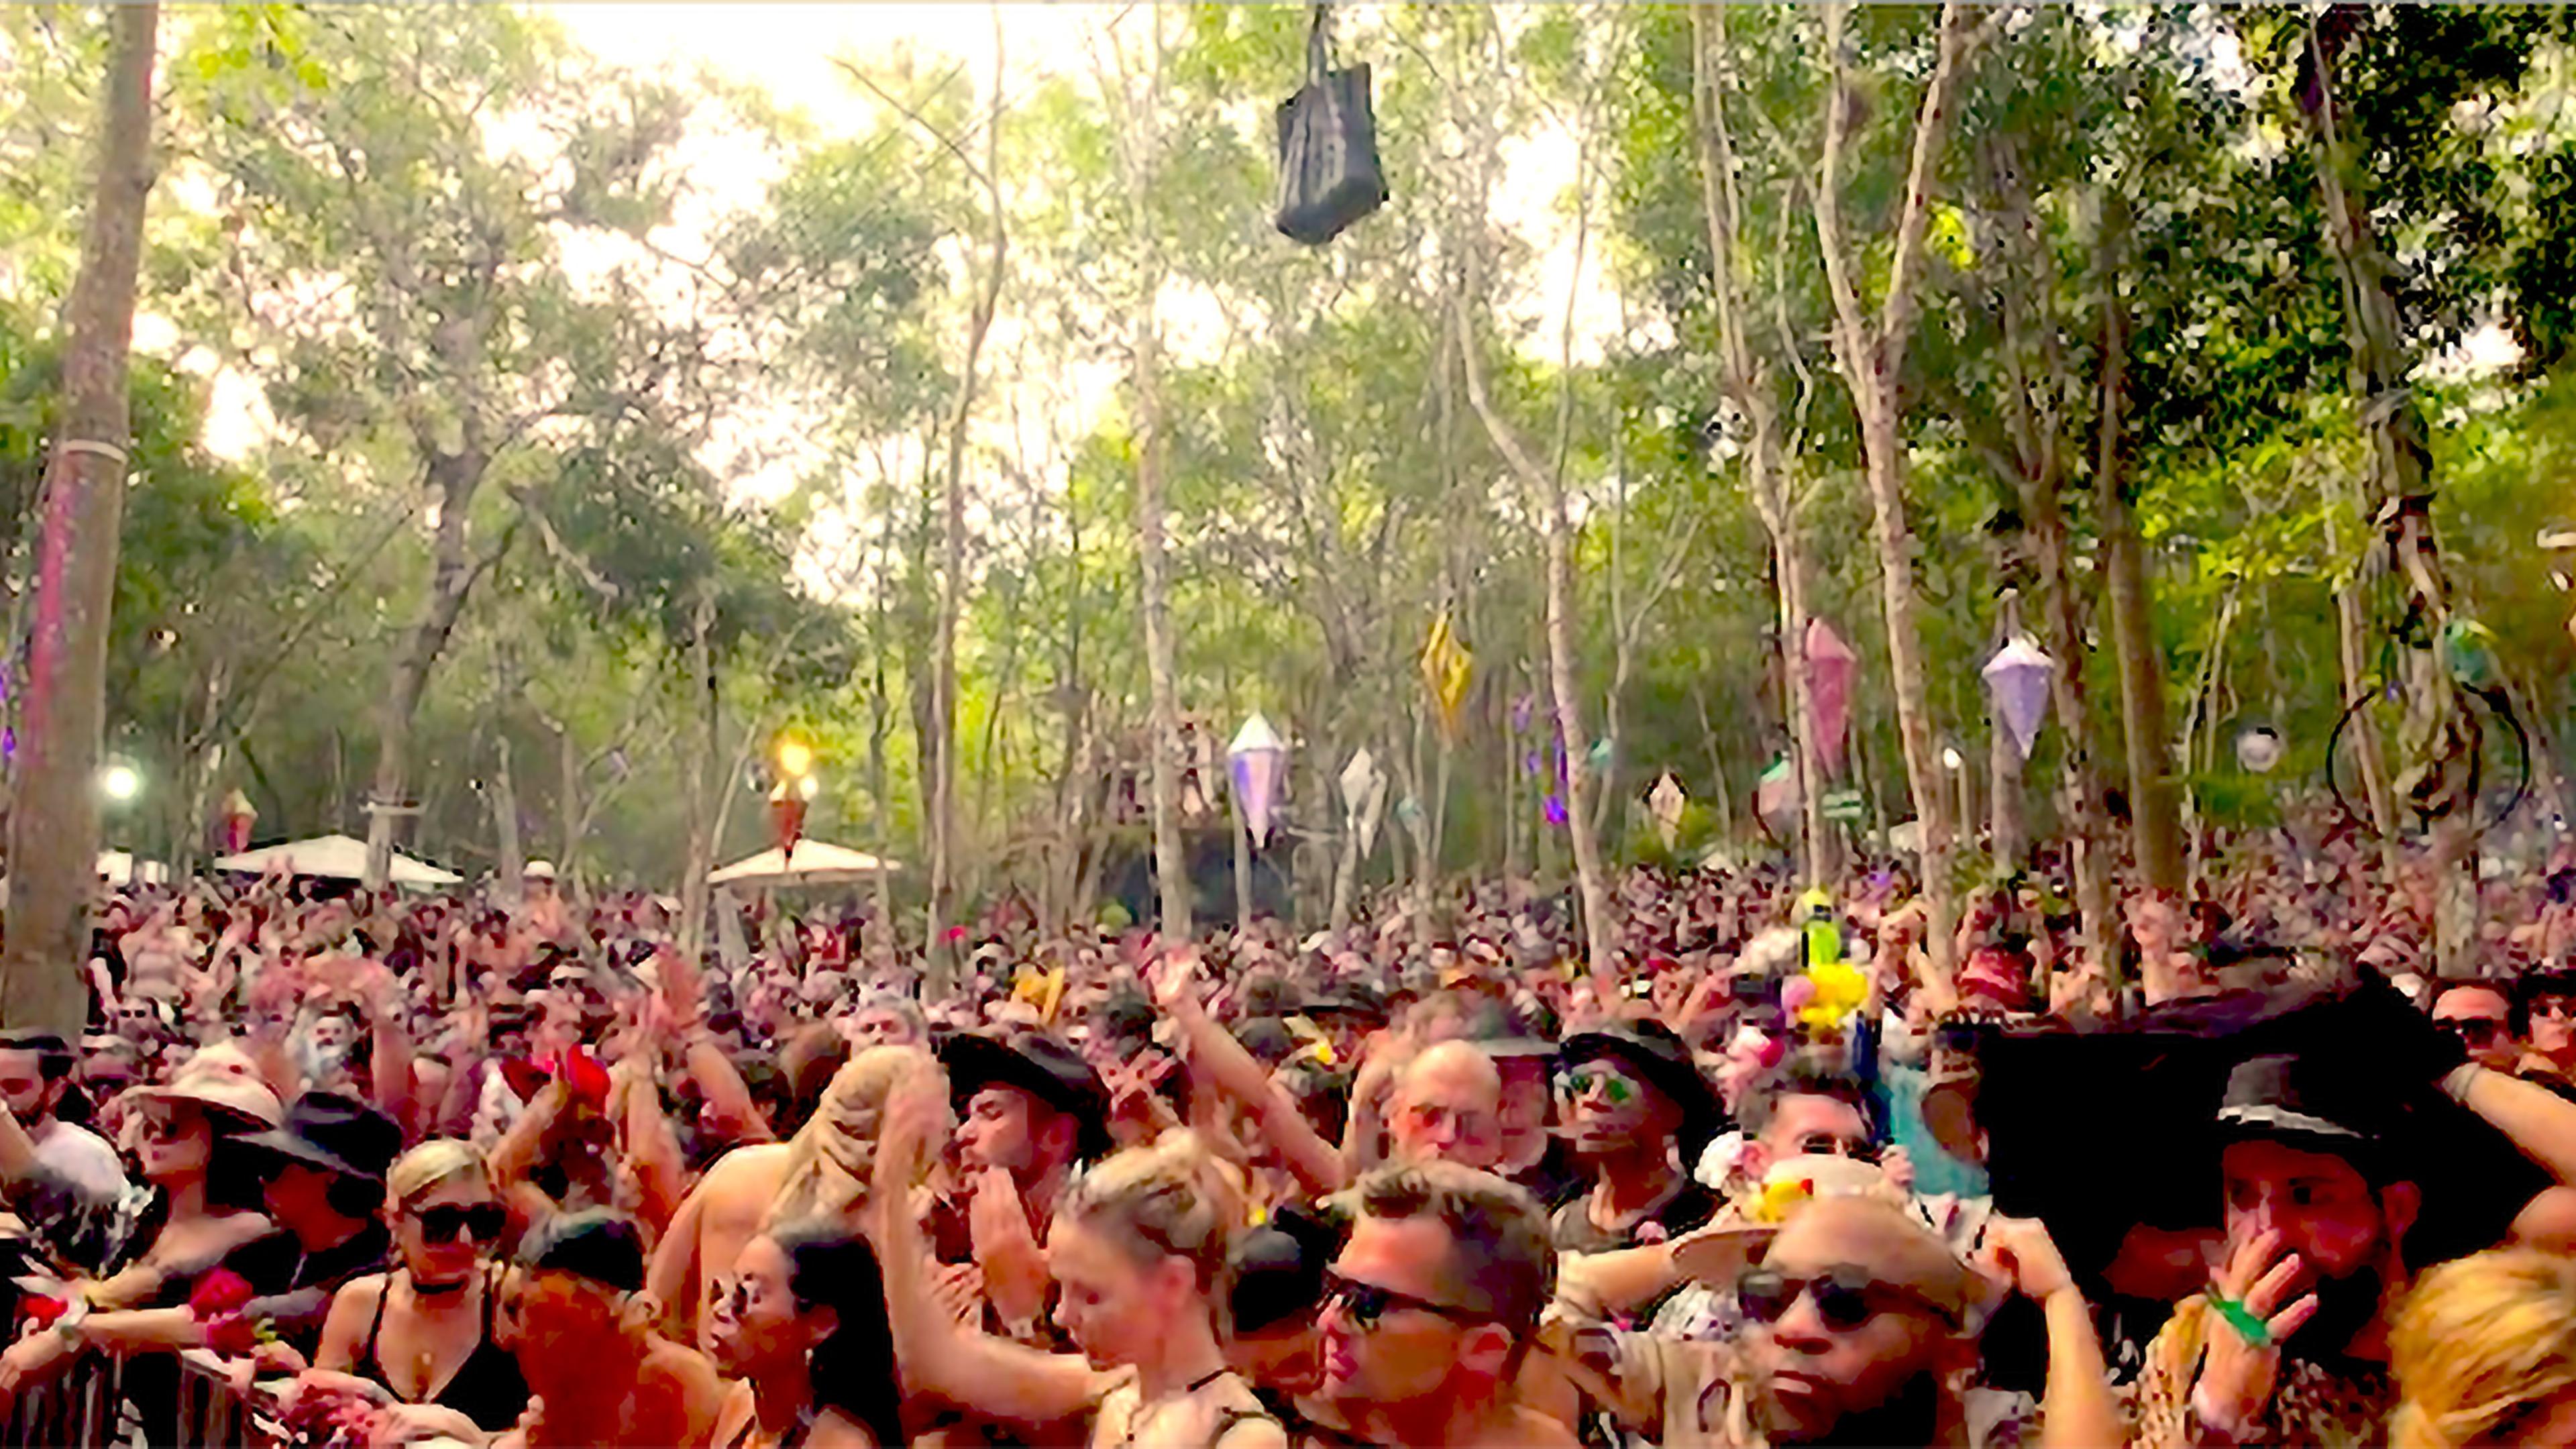 Eine Menschenmenge auf einer Party umgeben von Bäumen.